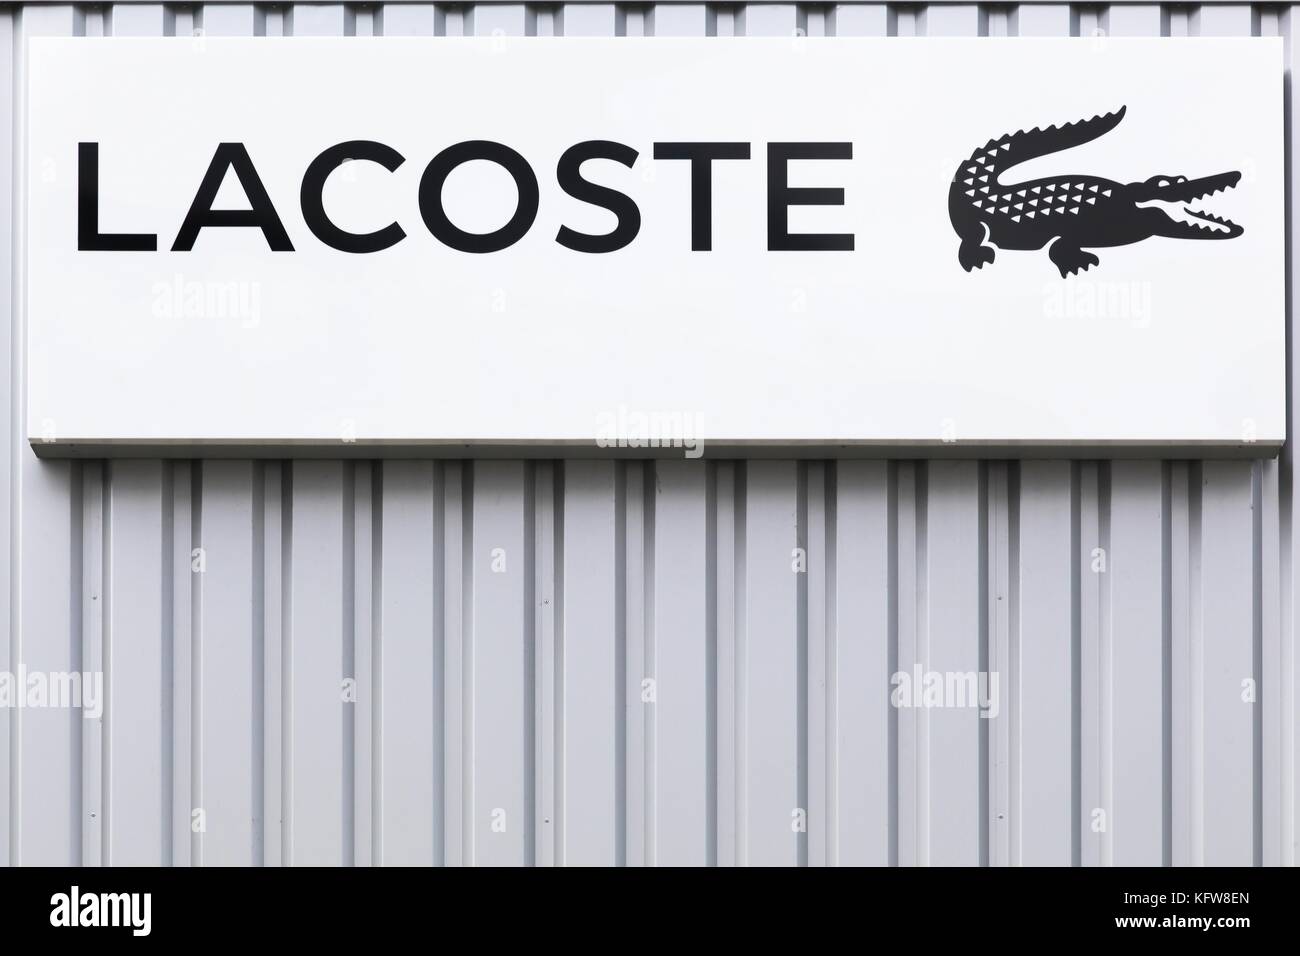 Bremen, Germania - 2 luglio 2, 2017: lacoste logo su una parete. lacoste è un francese di società di abbigliamento, fondata nel 1933 da giocatore di tennis rene lacoste Foto Stock